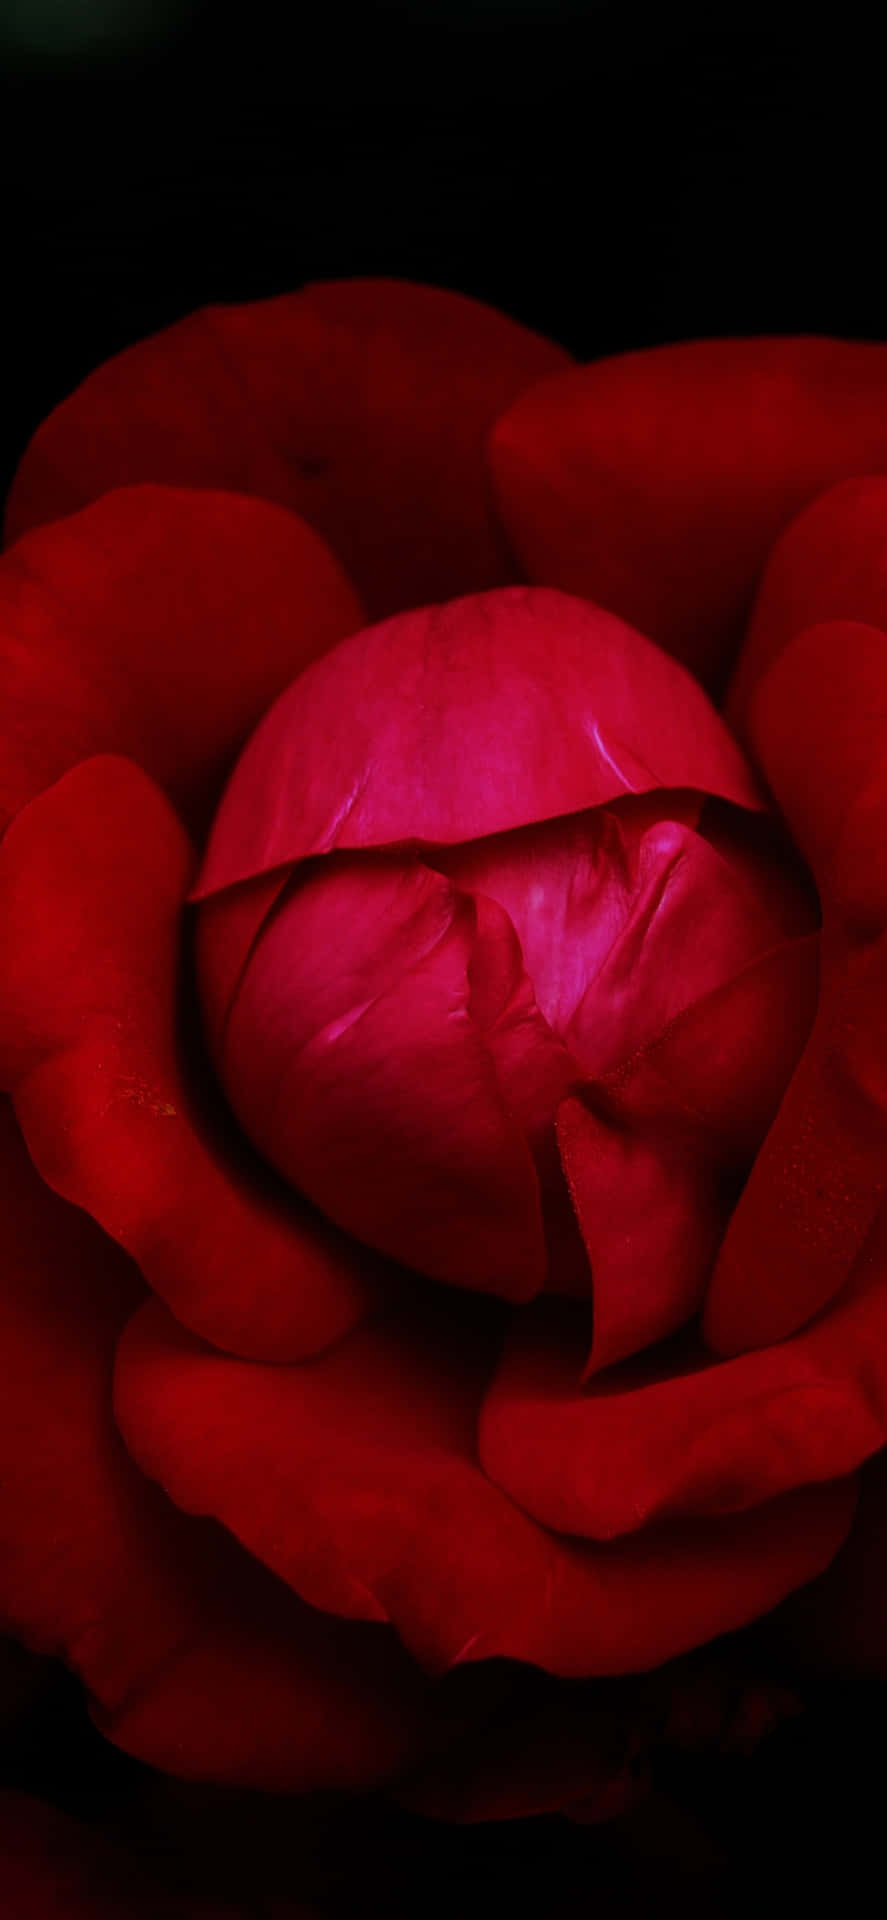 Lavibrante Bellezza Di Un Singolo Fiore Rosso